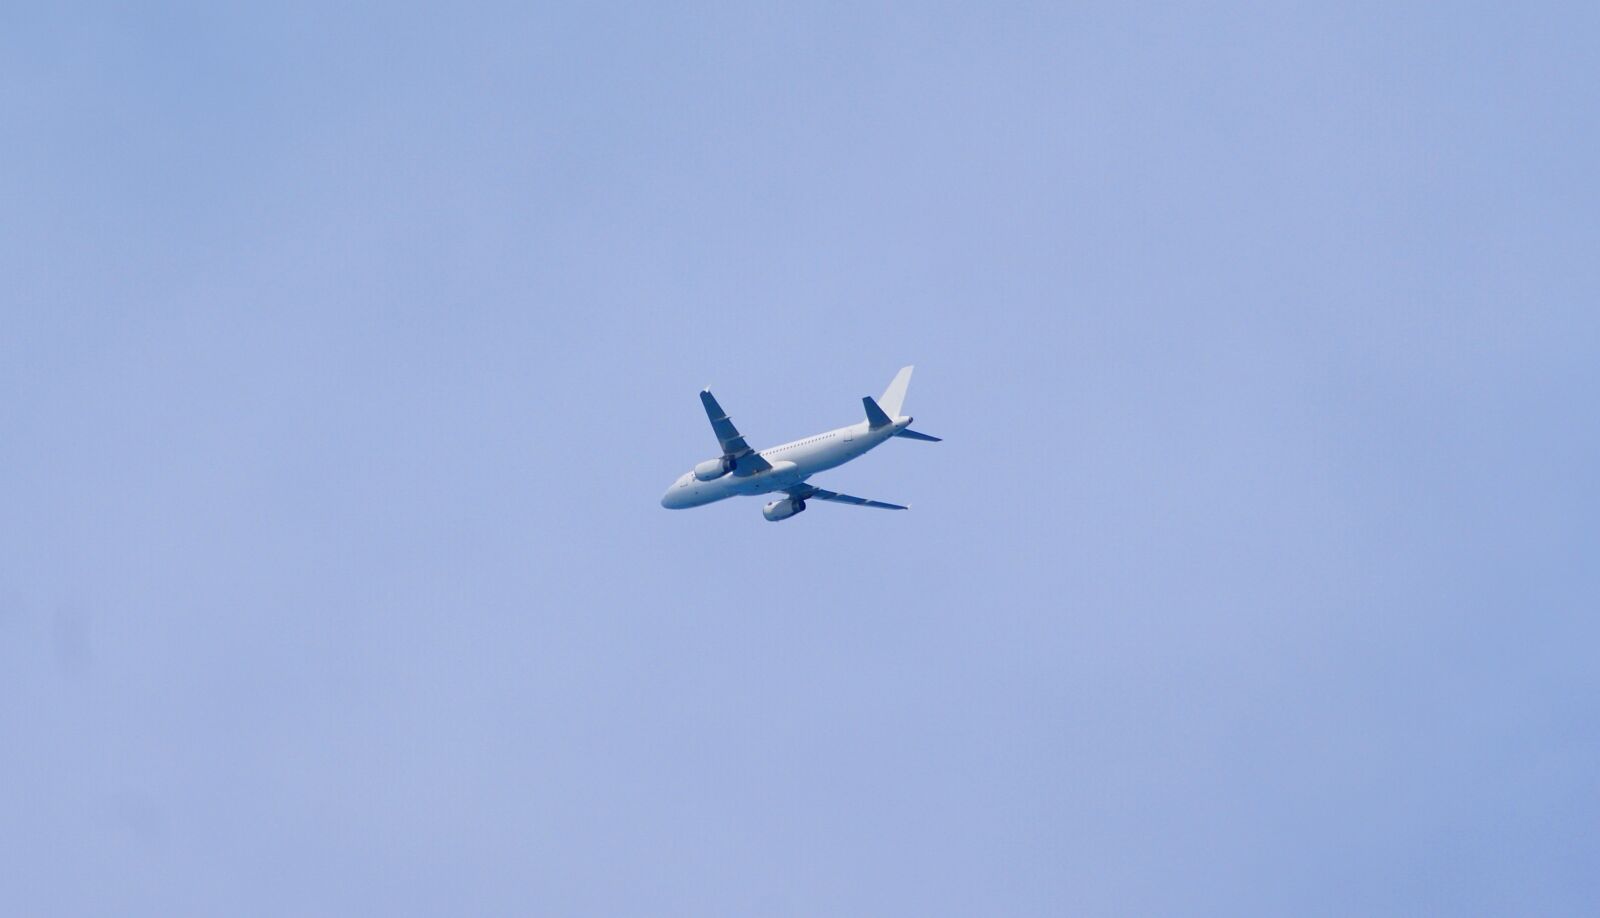 Sony Alpha DSLR-A380 sample photo. Plane, sky, flight photography